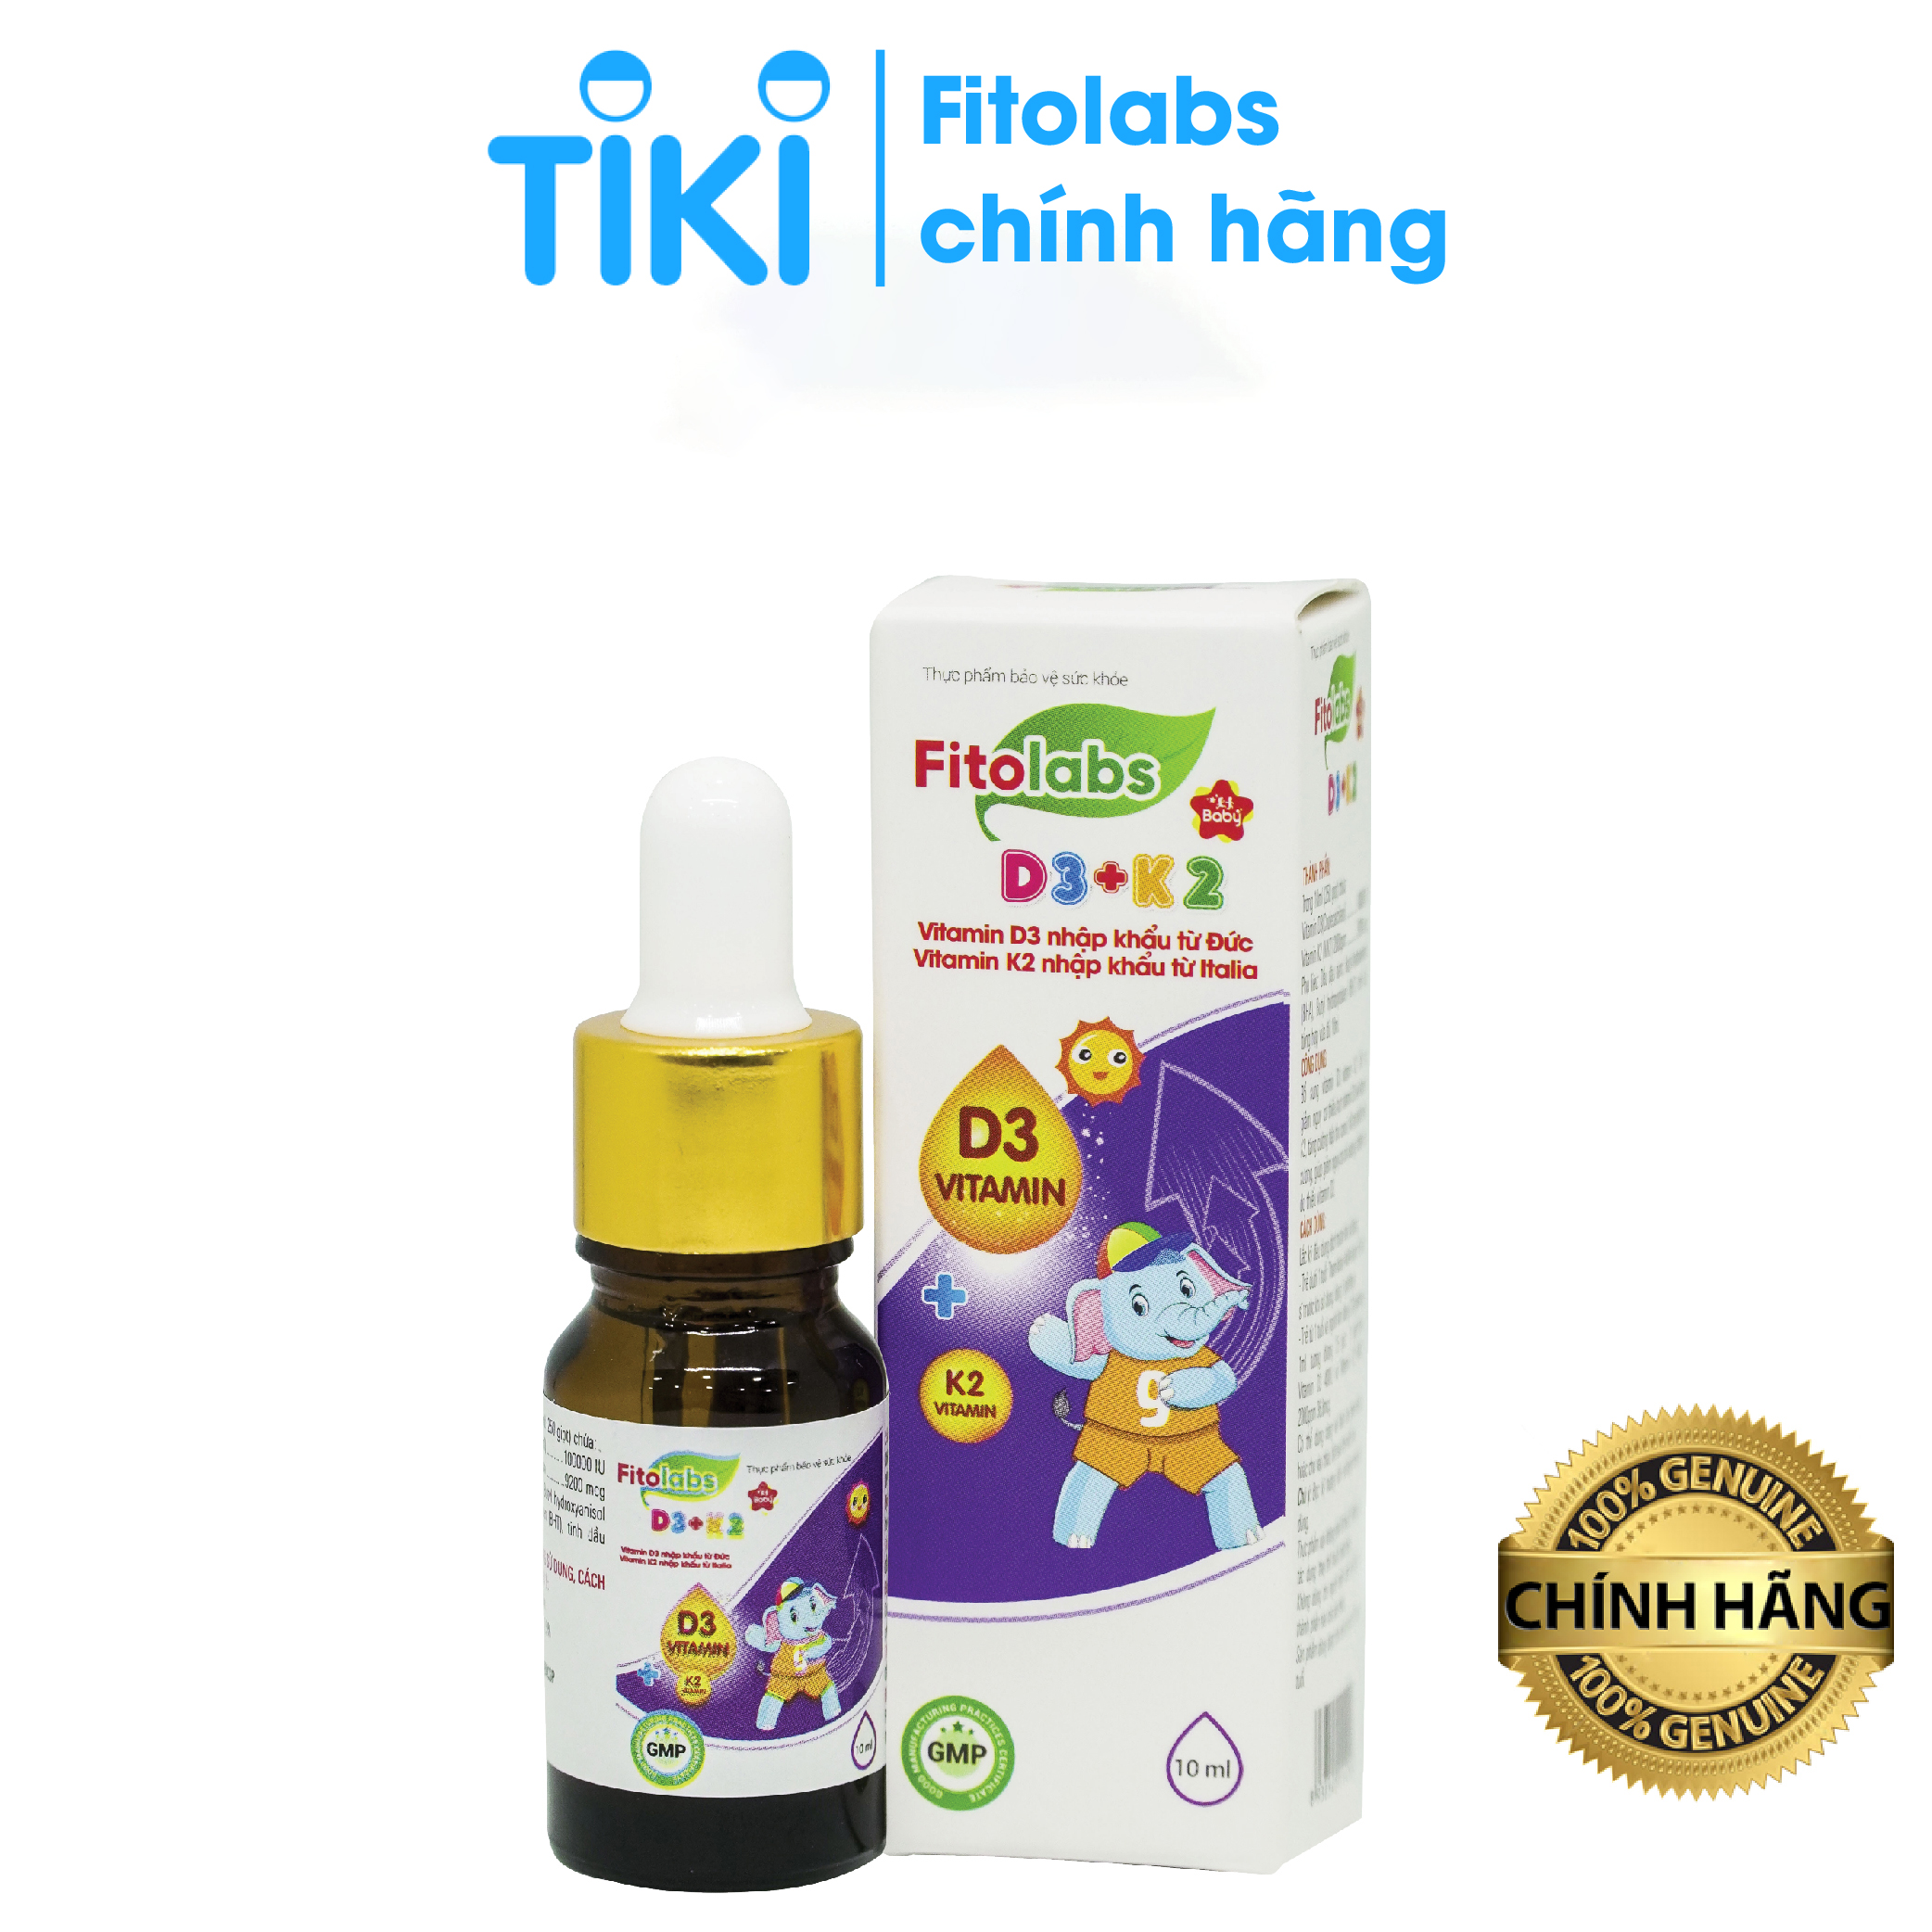 Fitolabs D3 - K2 dạng nhỏ giọt, bổ sung vitamin D3 K2 giúp bé tăng chiều cao